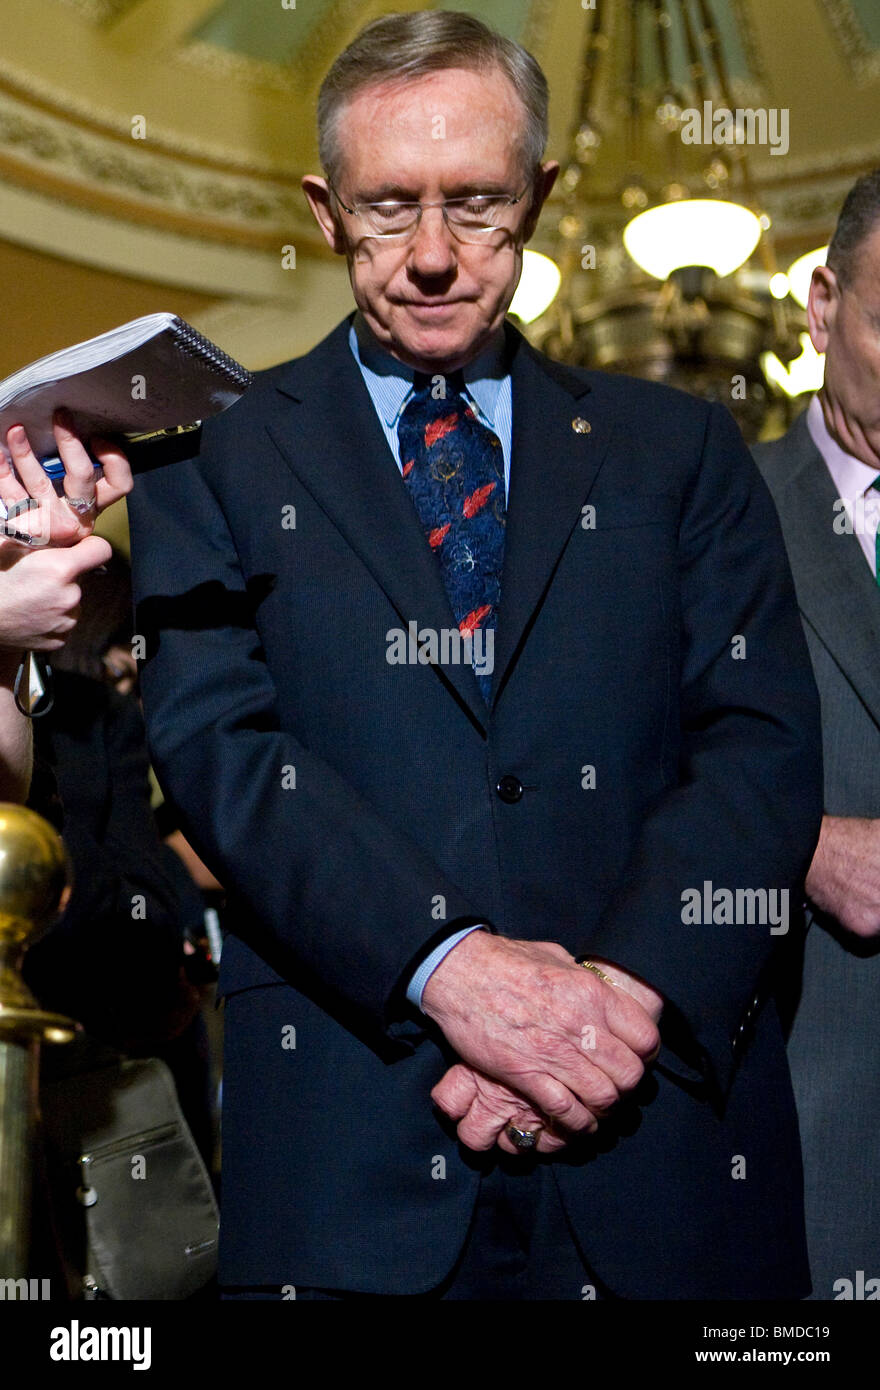 United States Senate Majority Leader Harry Reid. Stock Photo